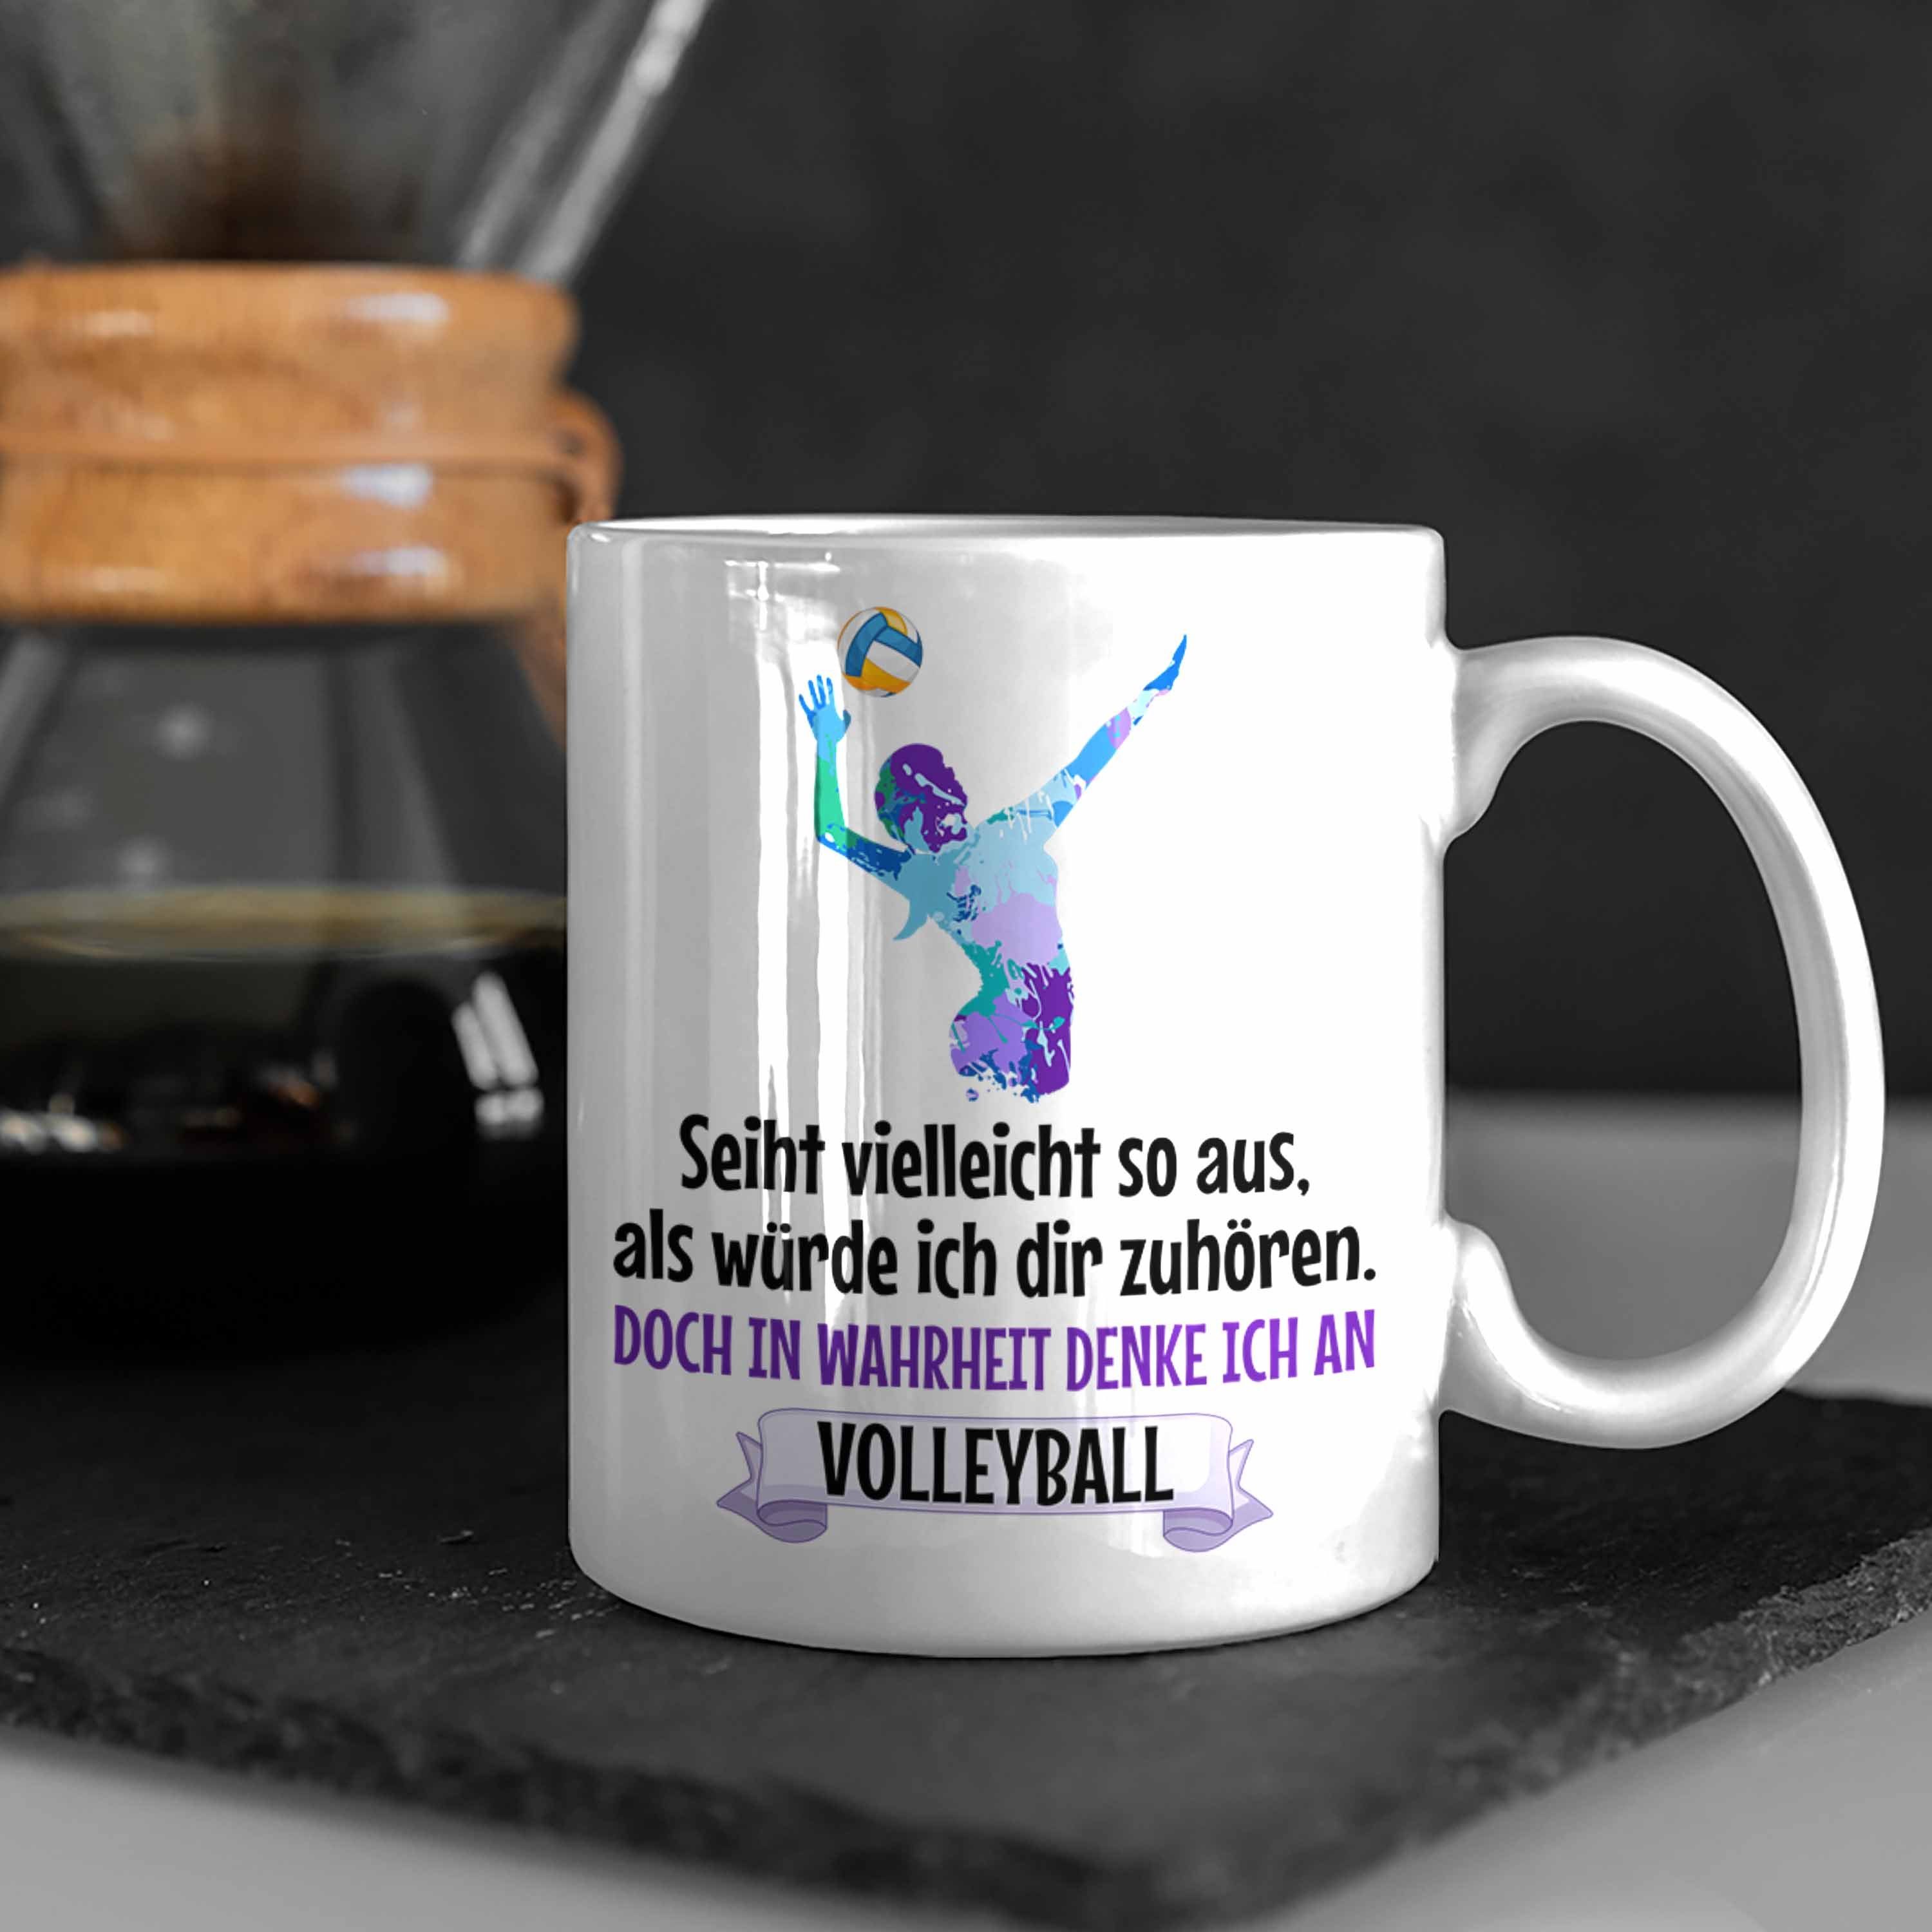 Trendation Tasse Weiss Herren Zubehör Volleyball-Spieler - Coach Tasse Mädchen Trendation Volleyball Spielerin Geschenk Kaffee